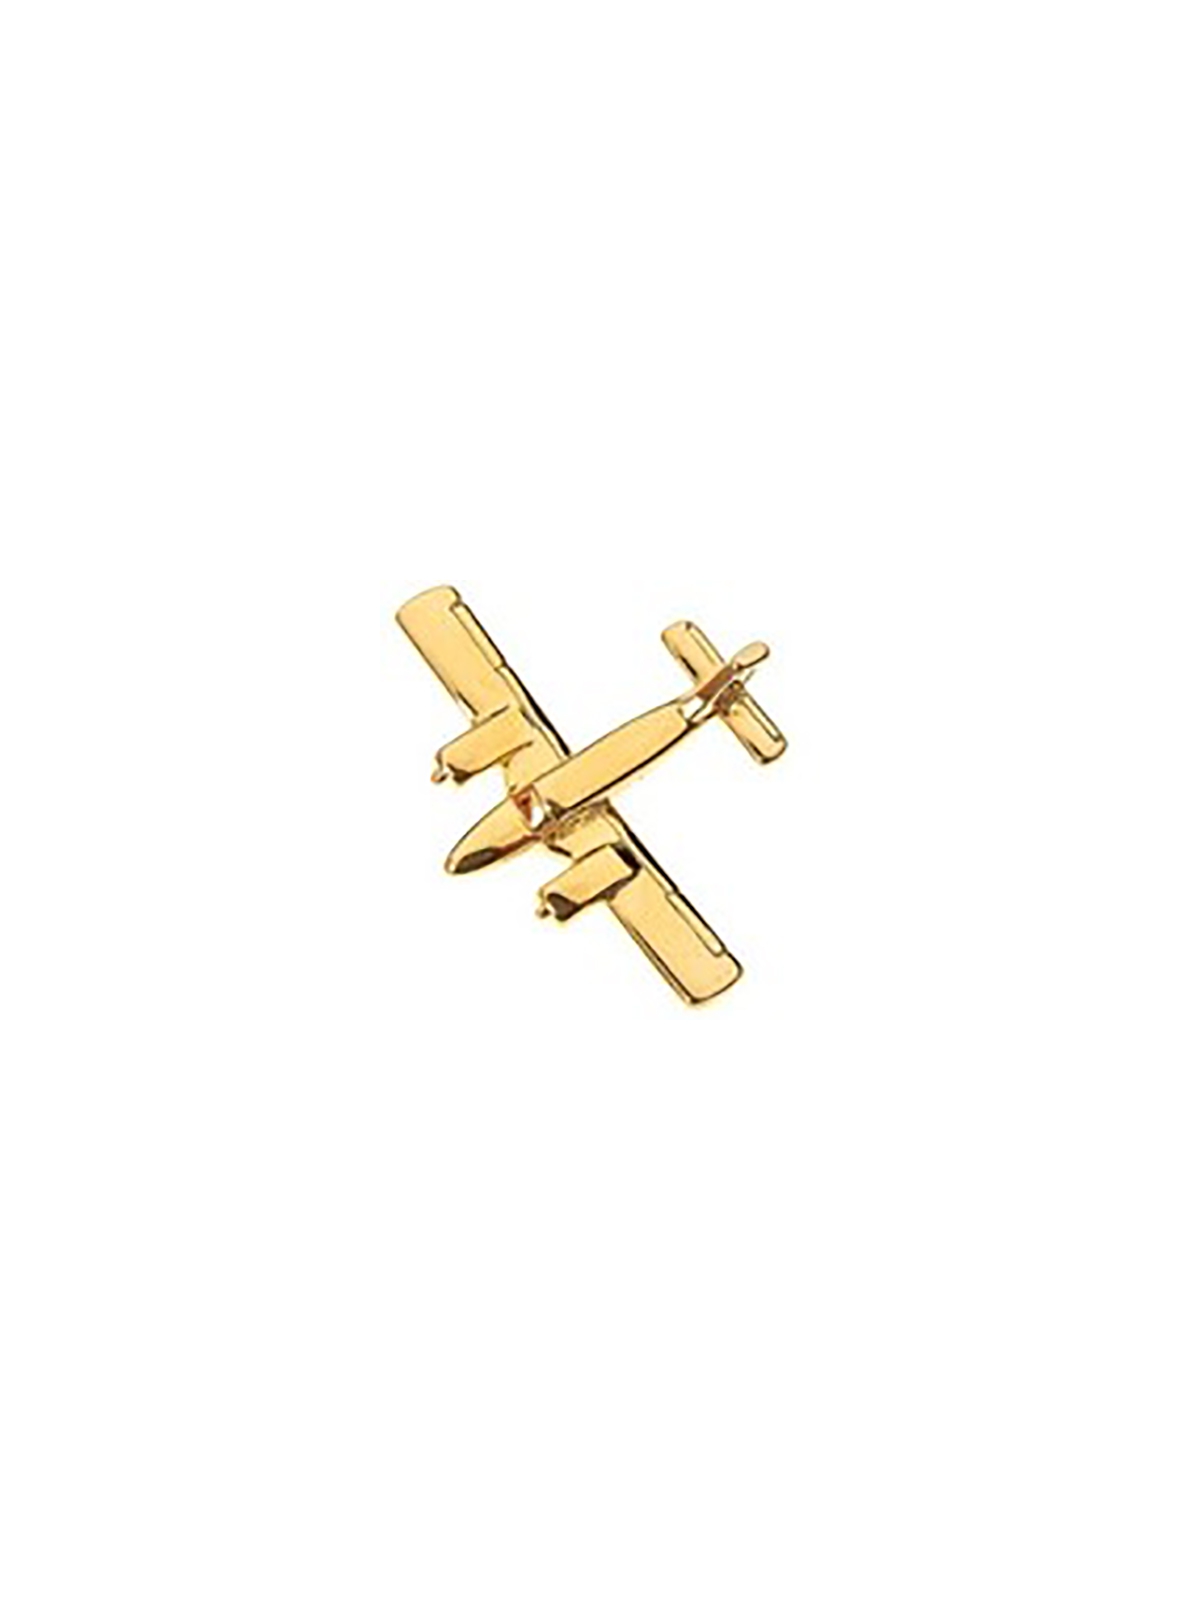 Pin Badge Piper Seneca - gold plated